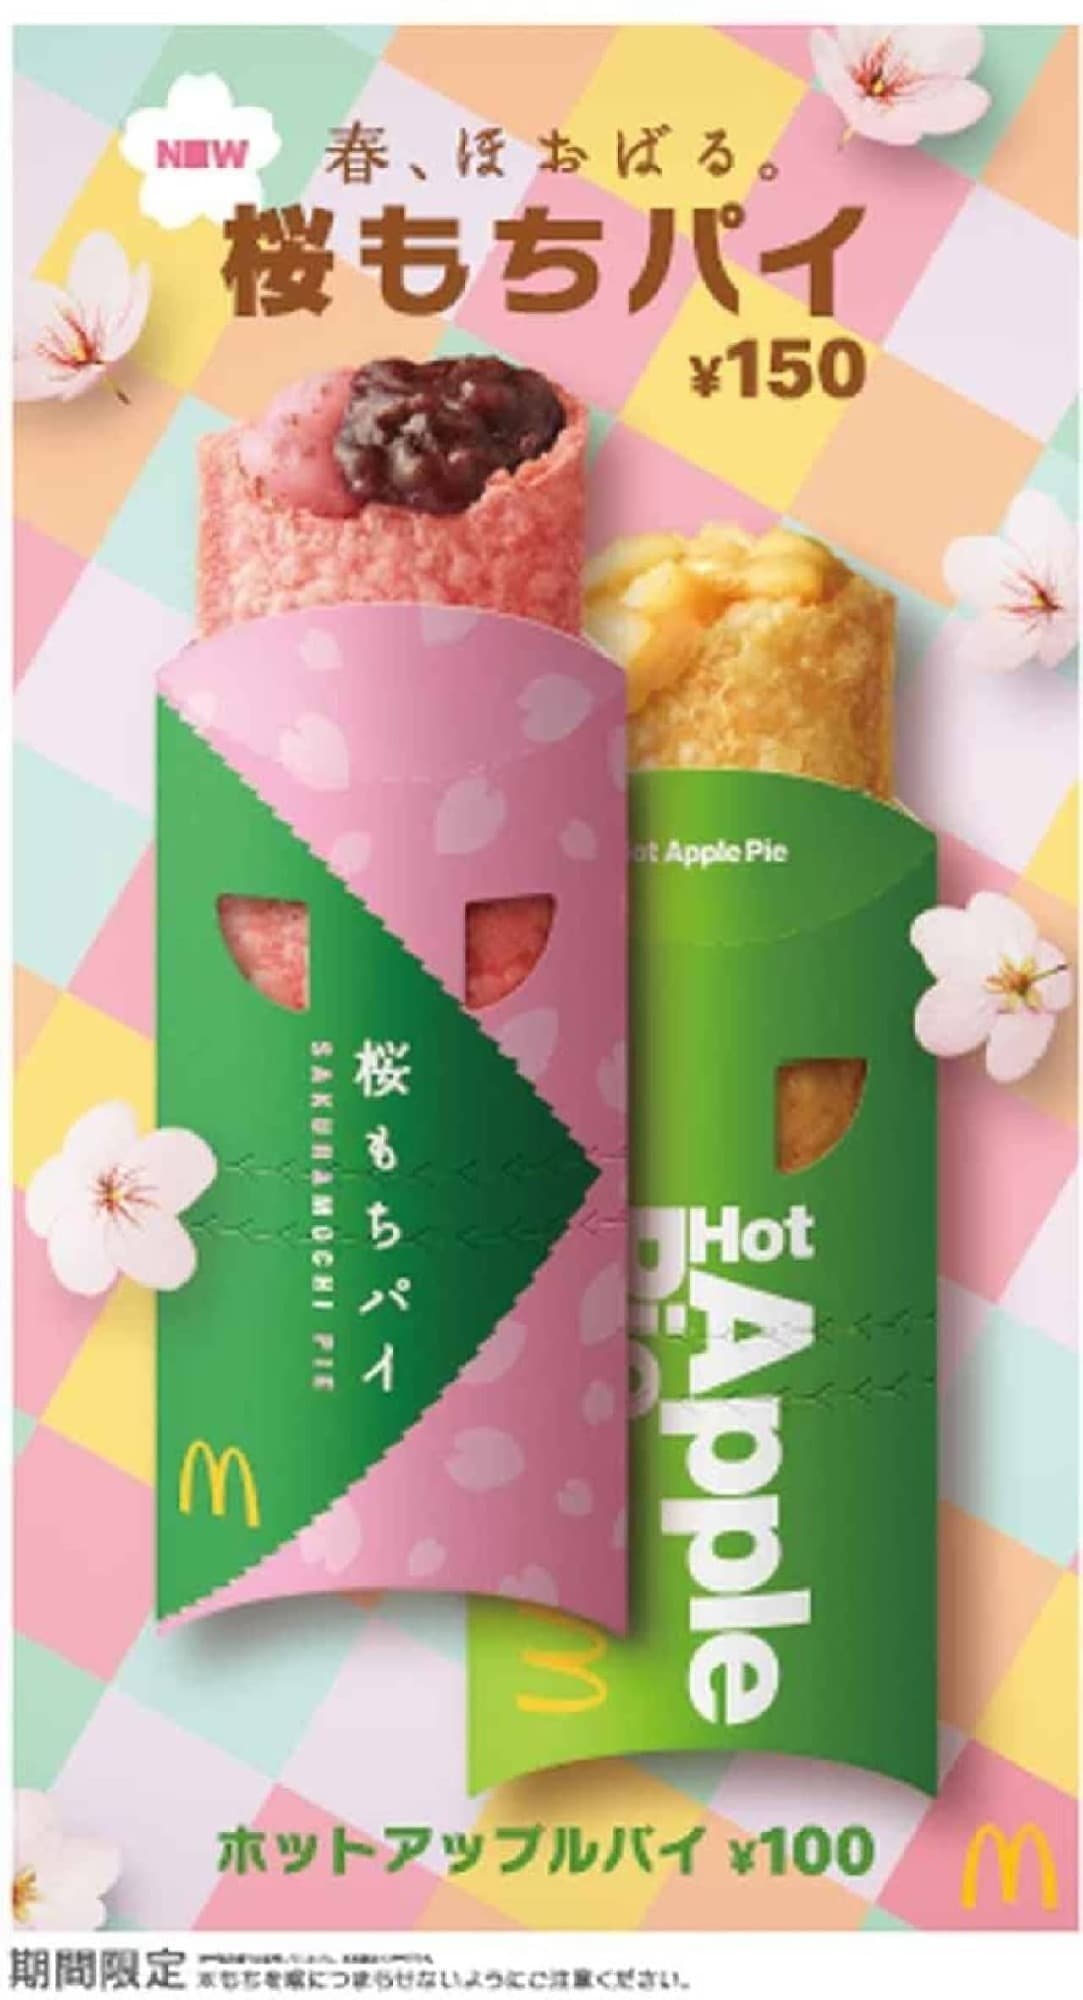 McDonald's "Sakura Mochi Pie